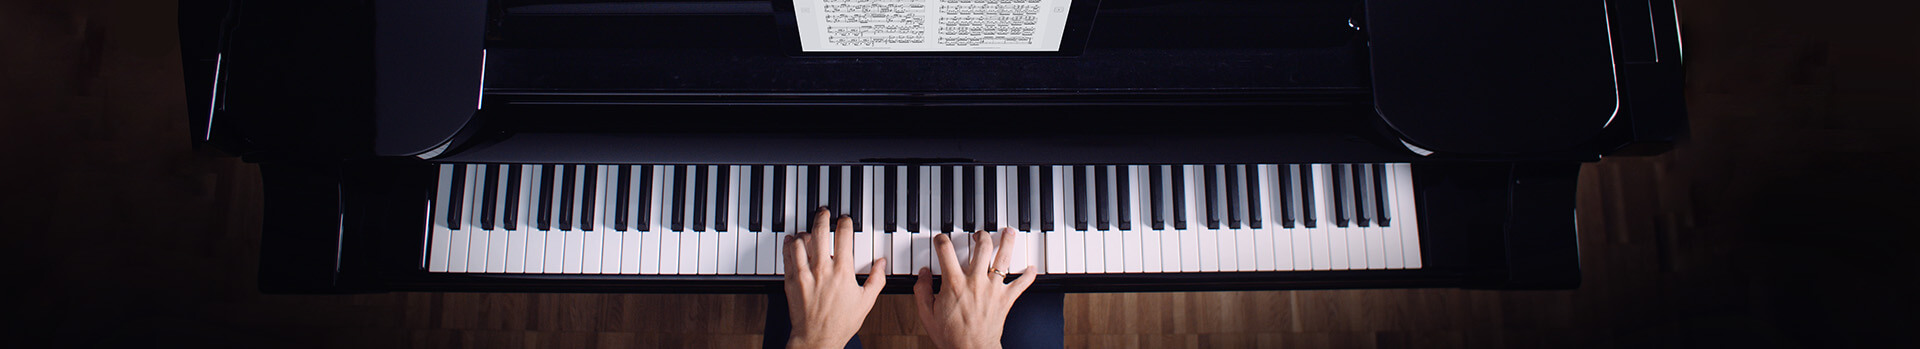 Einfache Klaviernoten - Mit diesen Stücken startest du am Klavier durch!